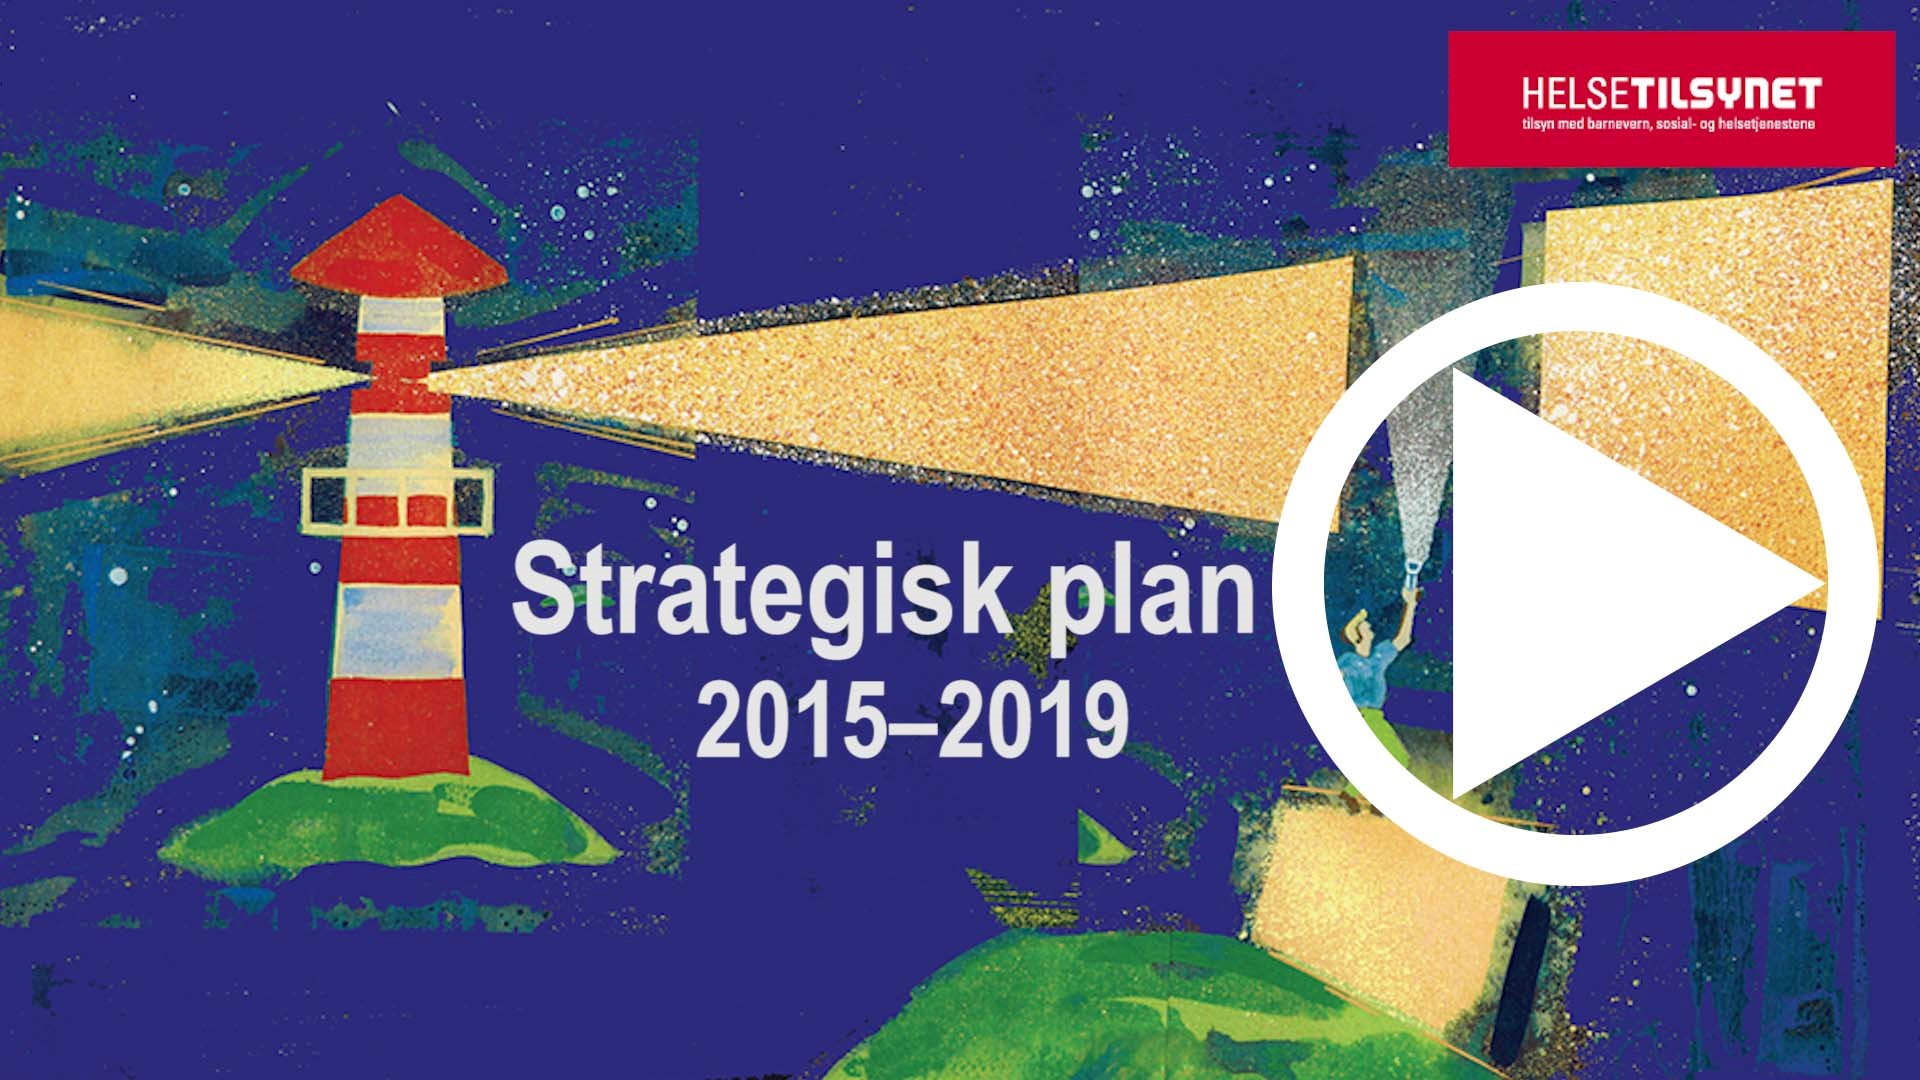 Videoen presenterer hovedpunktene i vår strategiske plan for 2015–2019. 